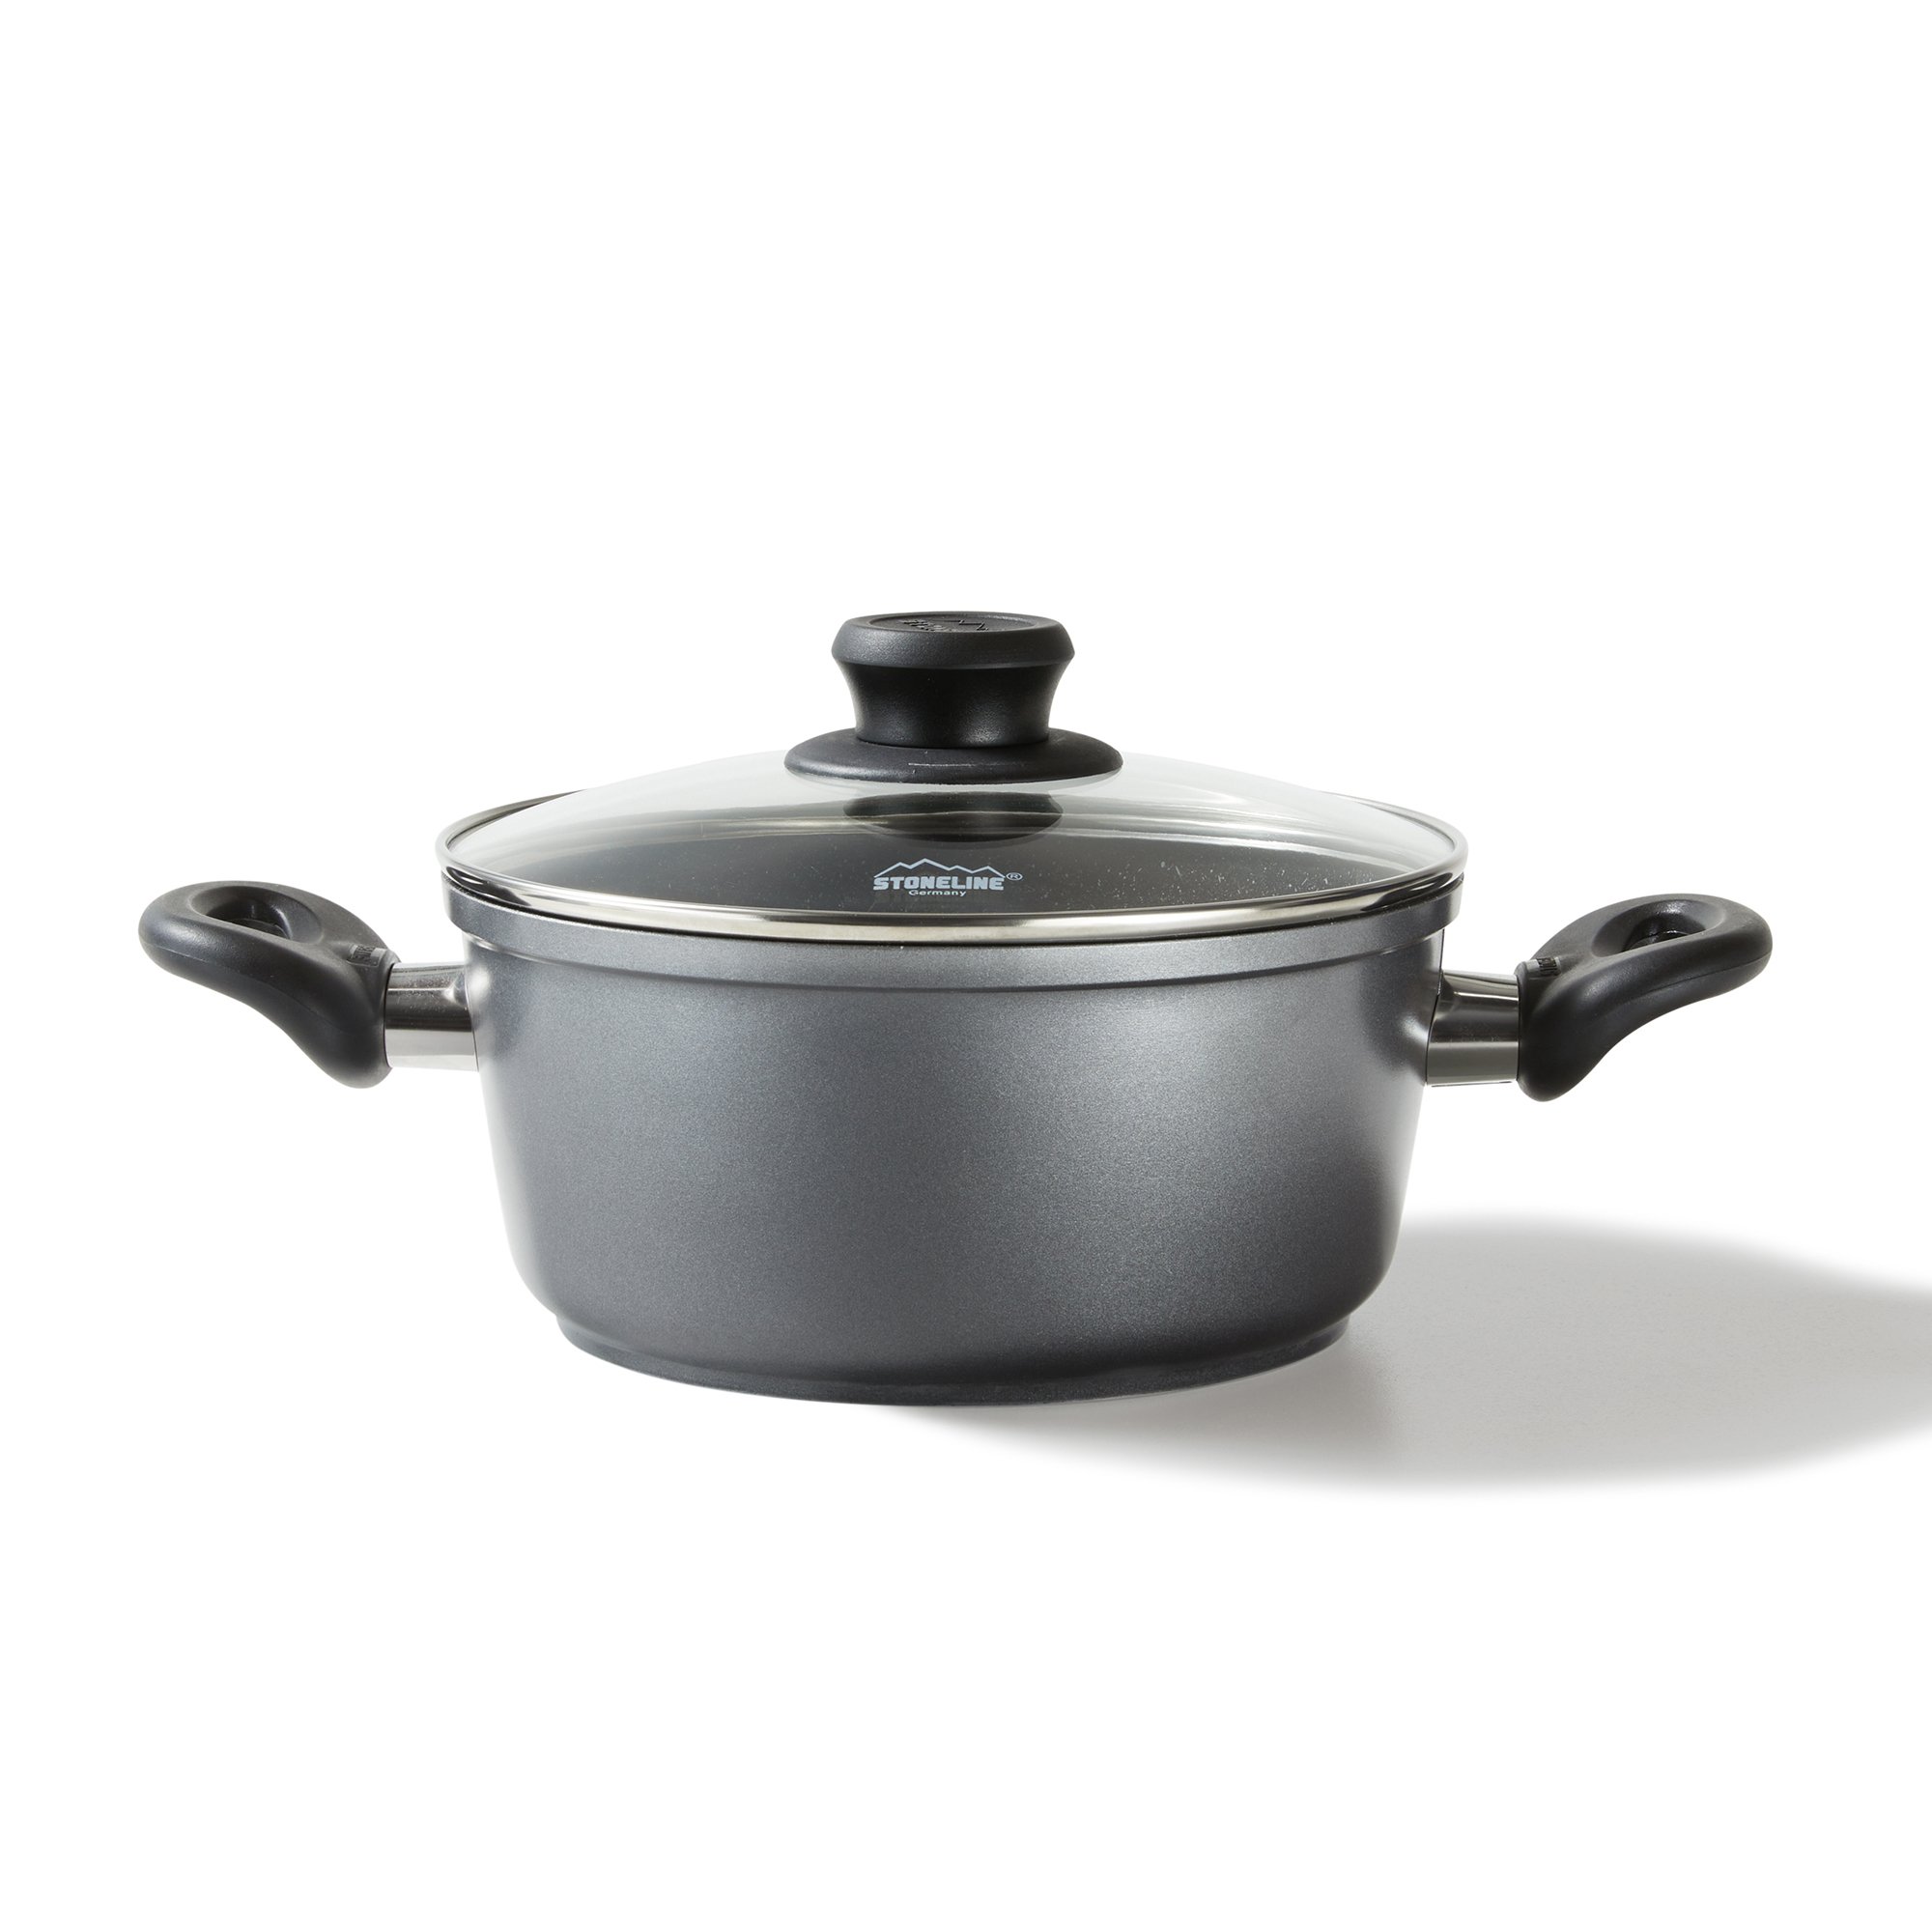 STONELINE® Cooking Pot 24 cm, with Lid, Large Non-Stick Pot | CLASSIC